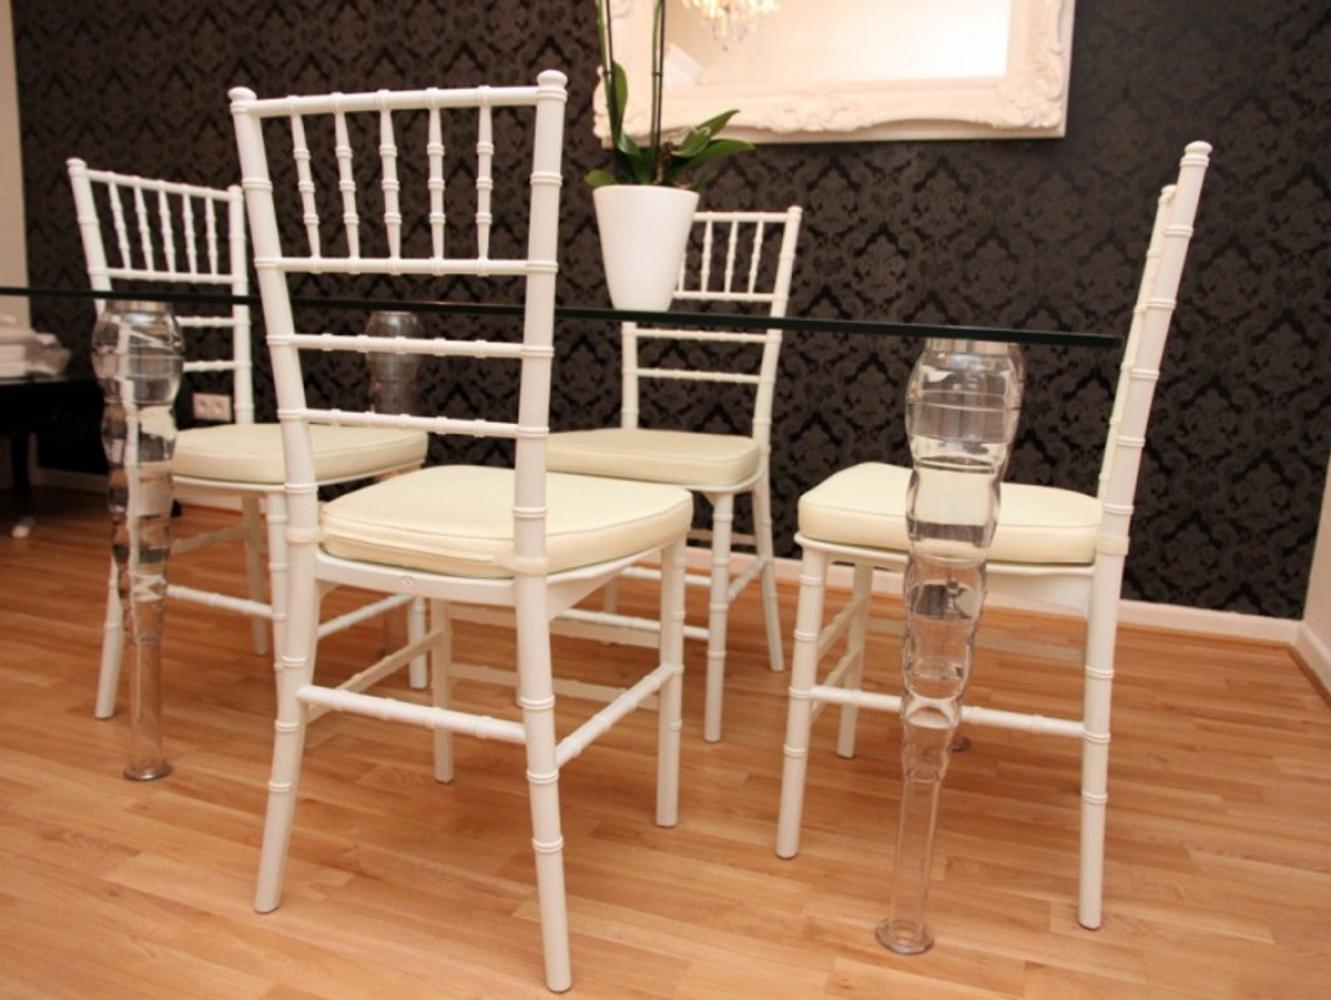 Designer Acryl Esszimmer Set Weiß/Creme - Ghost Chair Table - Polycarbonat Möbel - 1 Tisch + 4 Stühle - Casa Padrino Designer Möbel Bild 1